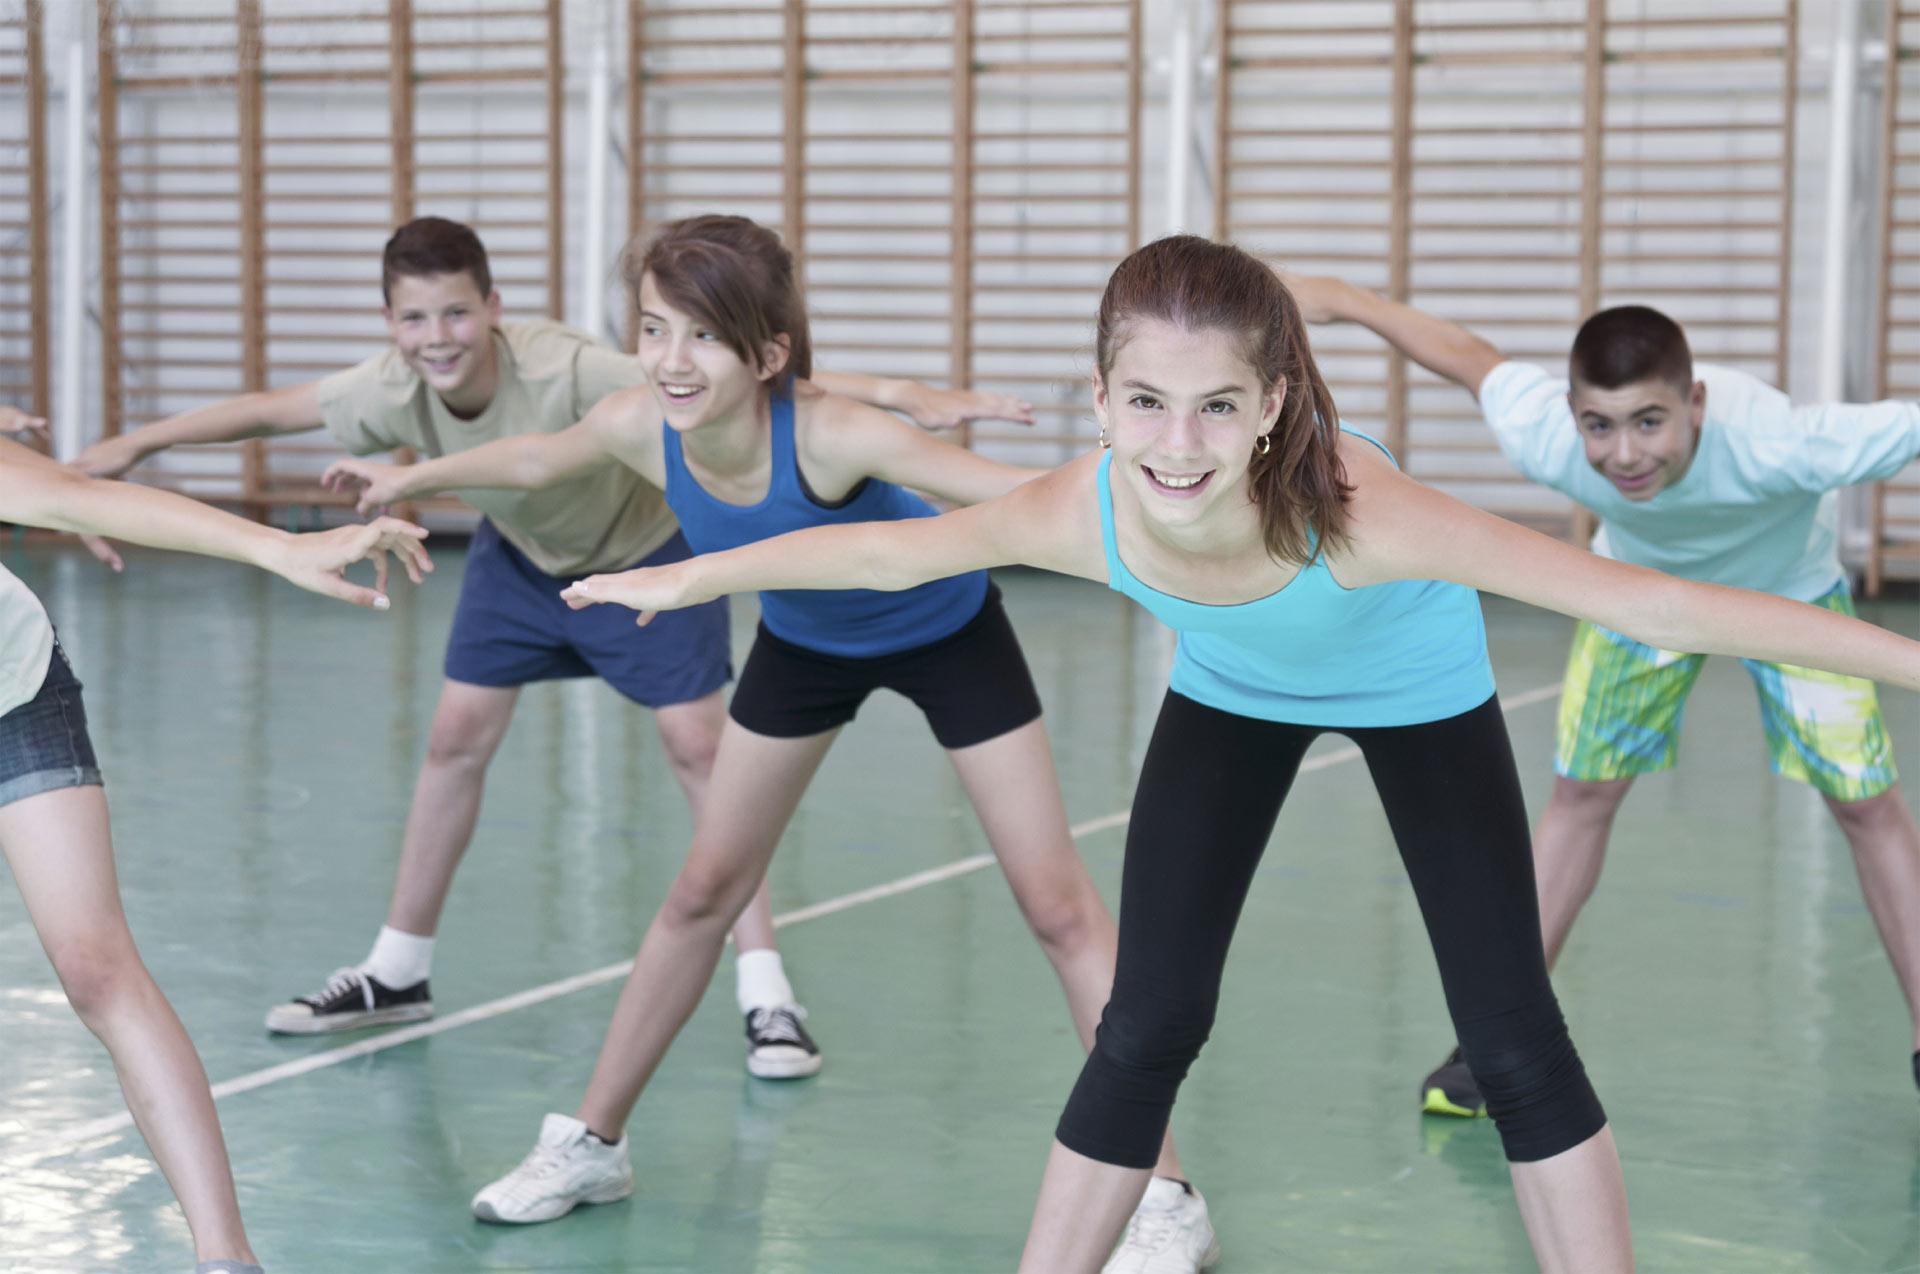 La práctica de actividades físicas en los primeros años de la juventud reduce el riesgo de desarrollar la enfermedad